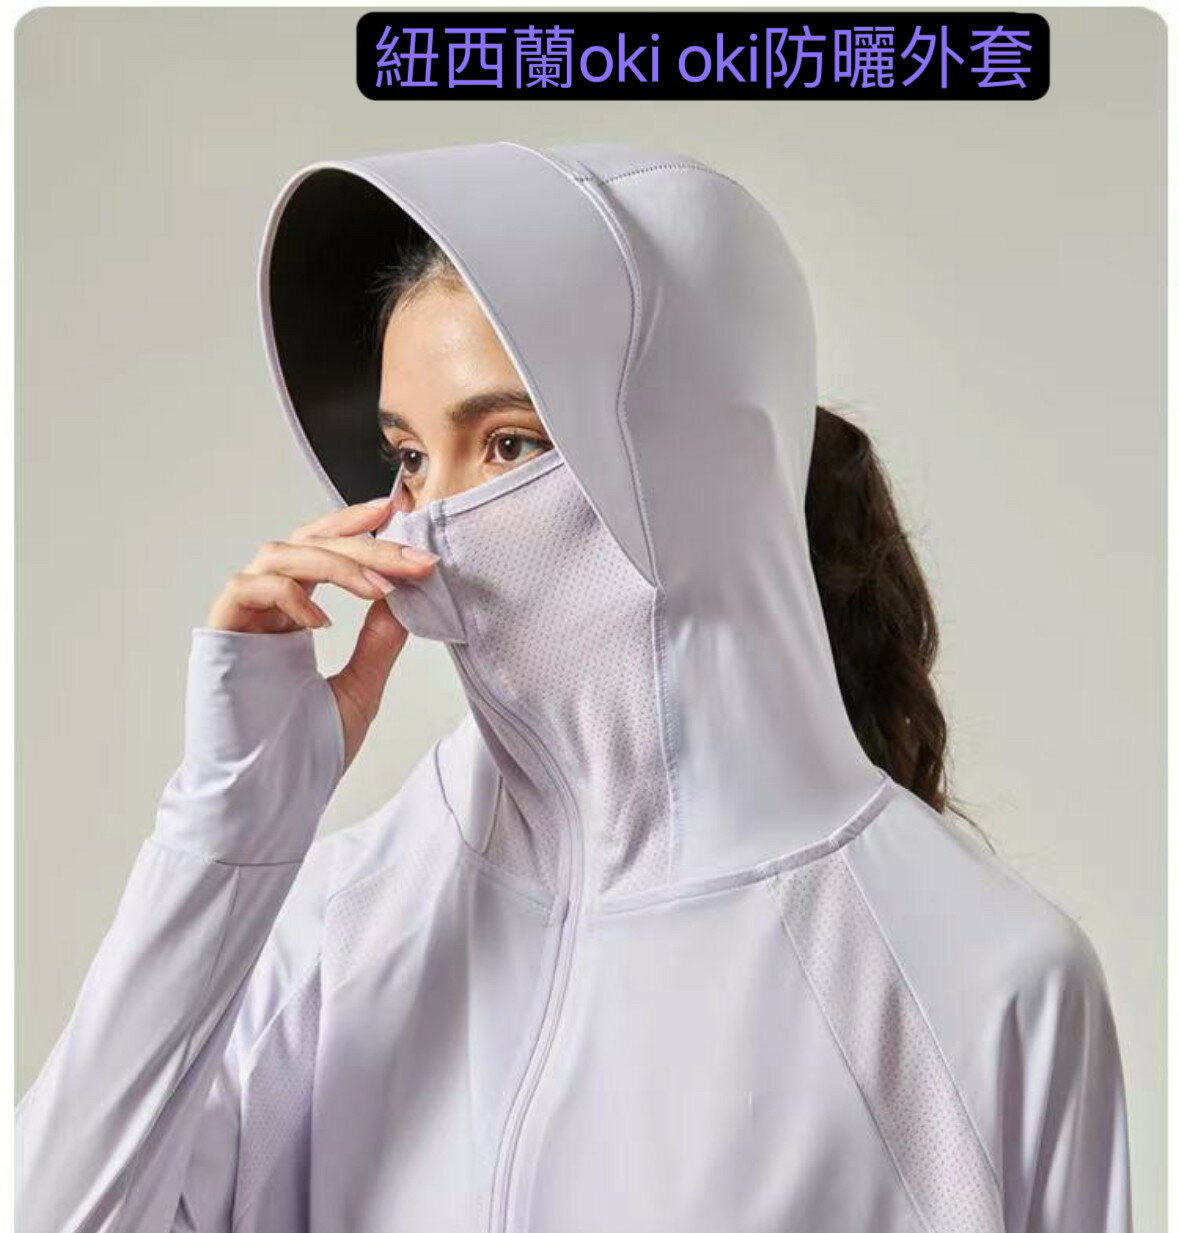 紐西蘭 okioki(正品授權)涼感防曬外套(香竽紫)時尚連帽涼感衣科技防曬外套 短版 薄款運動外套